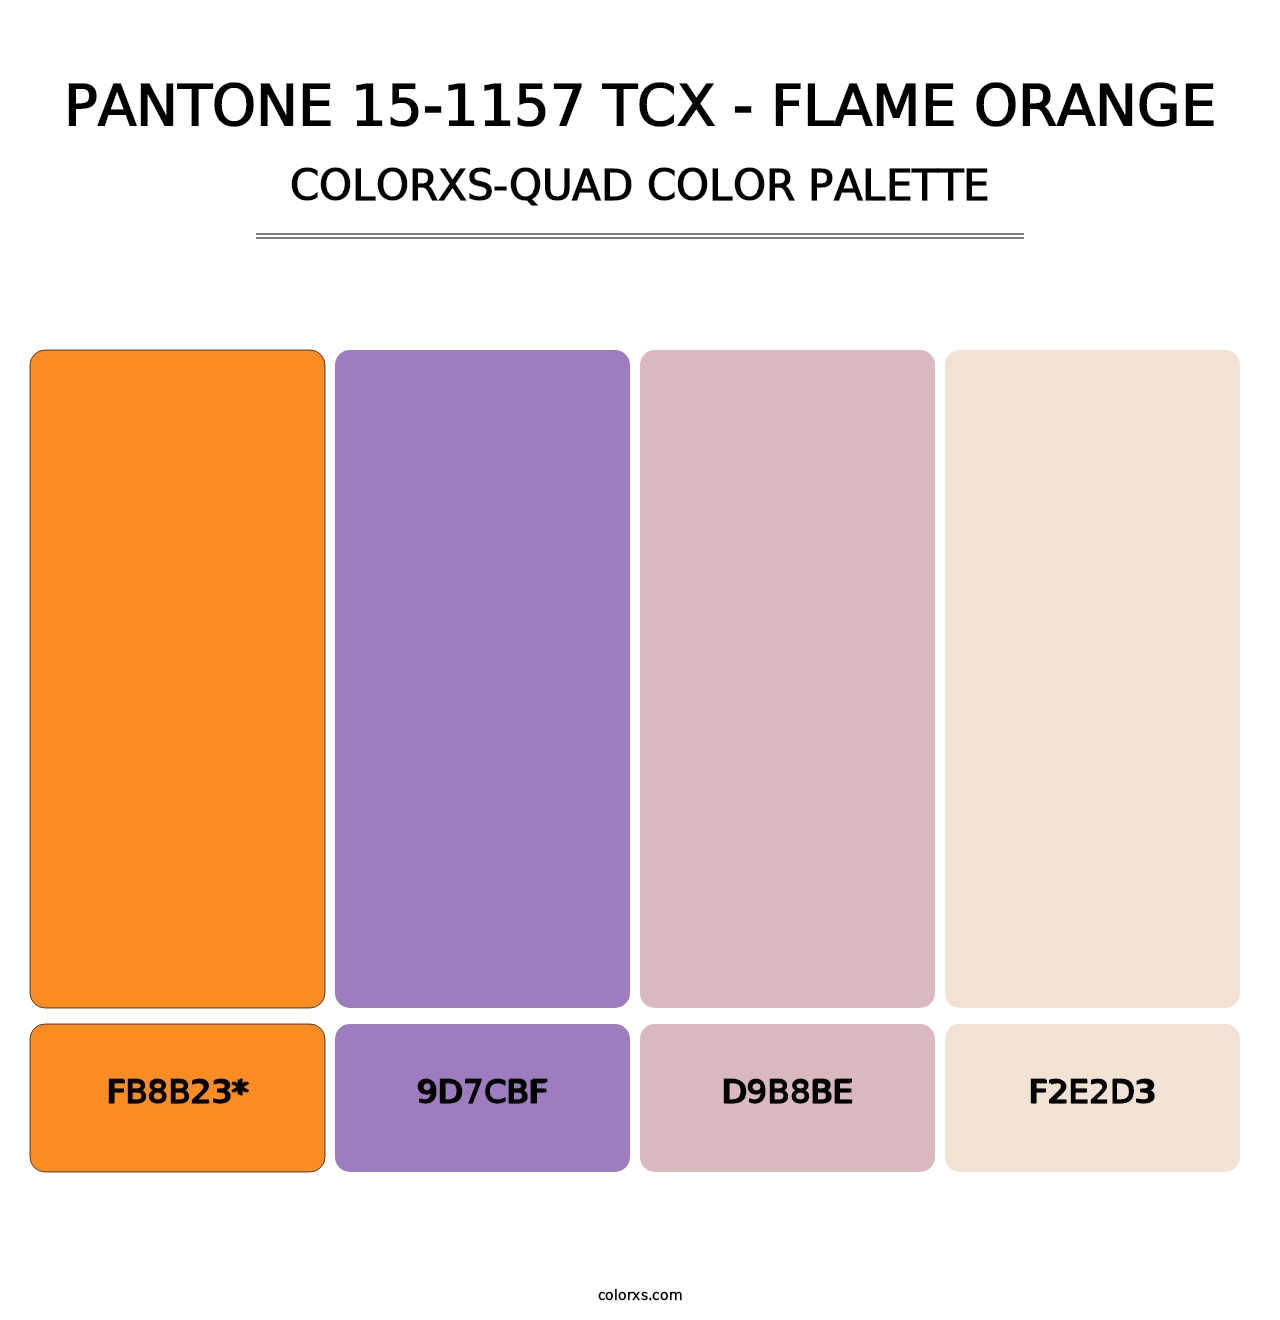 PANTONE 15-1157 TCX - Flame Orange - Colorxs Quad Palette